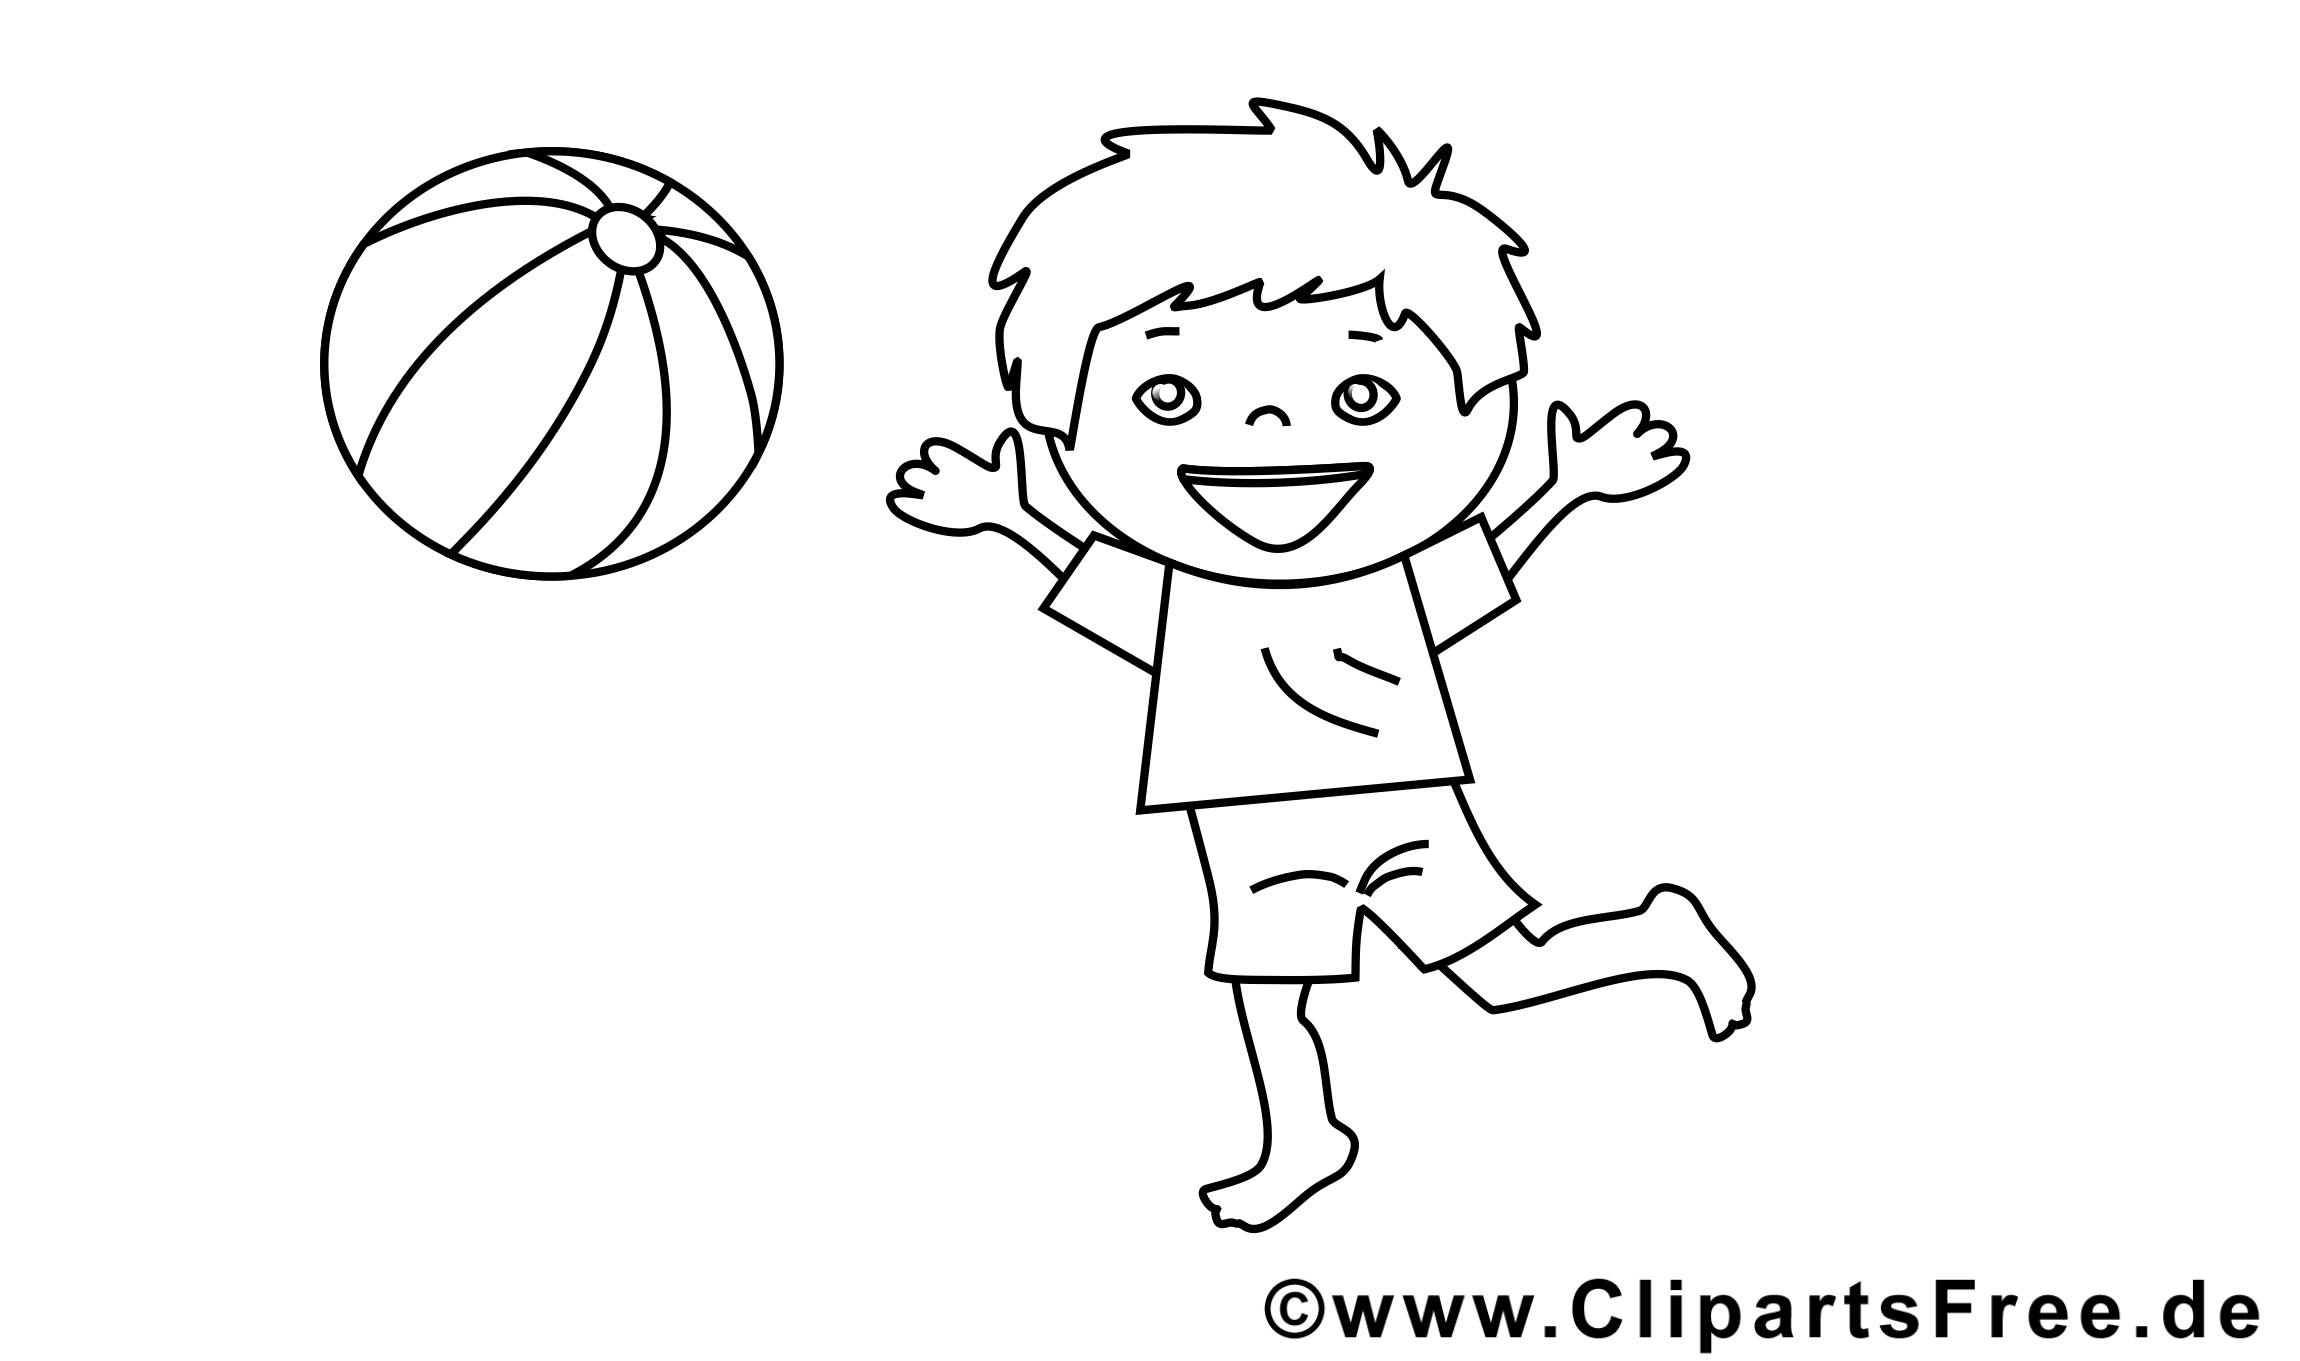 Jouer au ballon coloriage - Maternelle cliparts Kopie